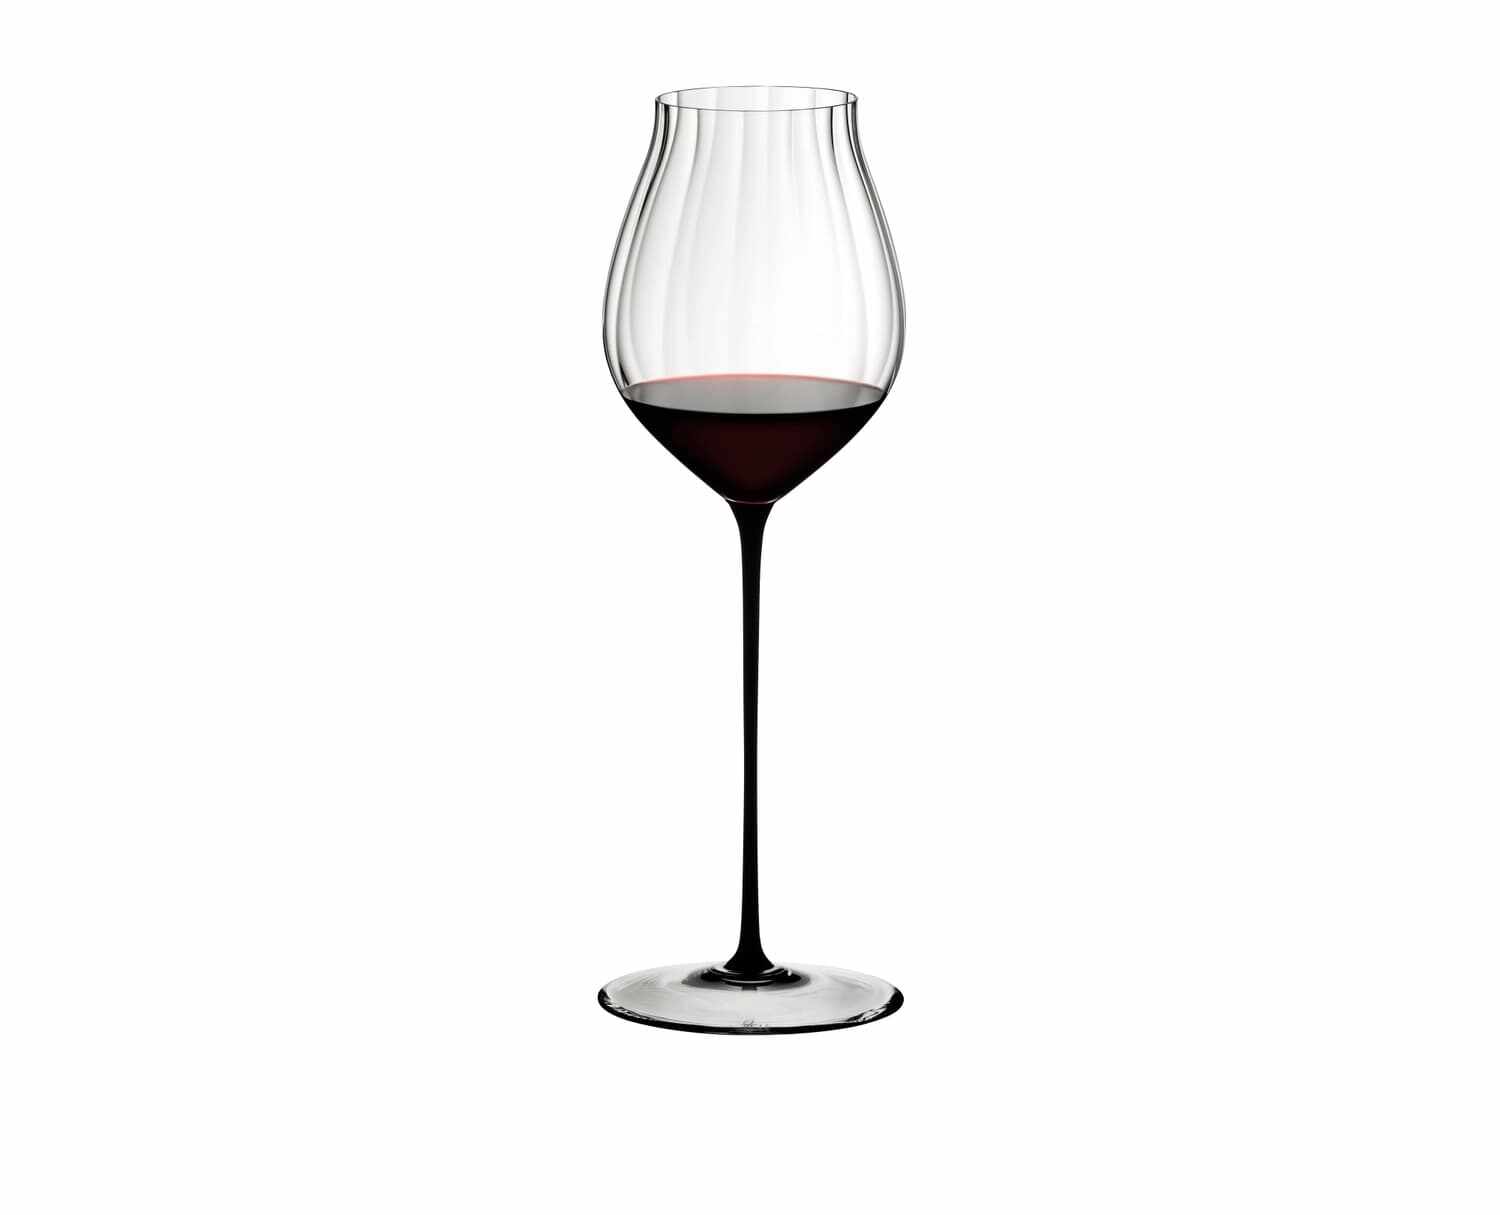 Pahar pentru vin, din cristal High Performance Pinot Noir Negru, 830 ml, Riedel